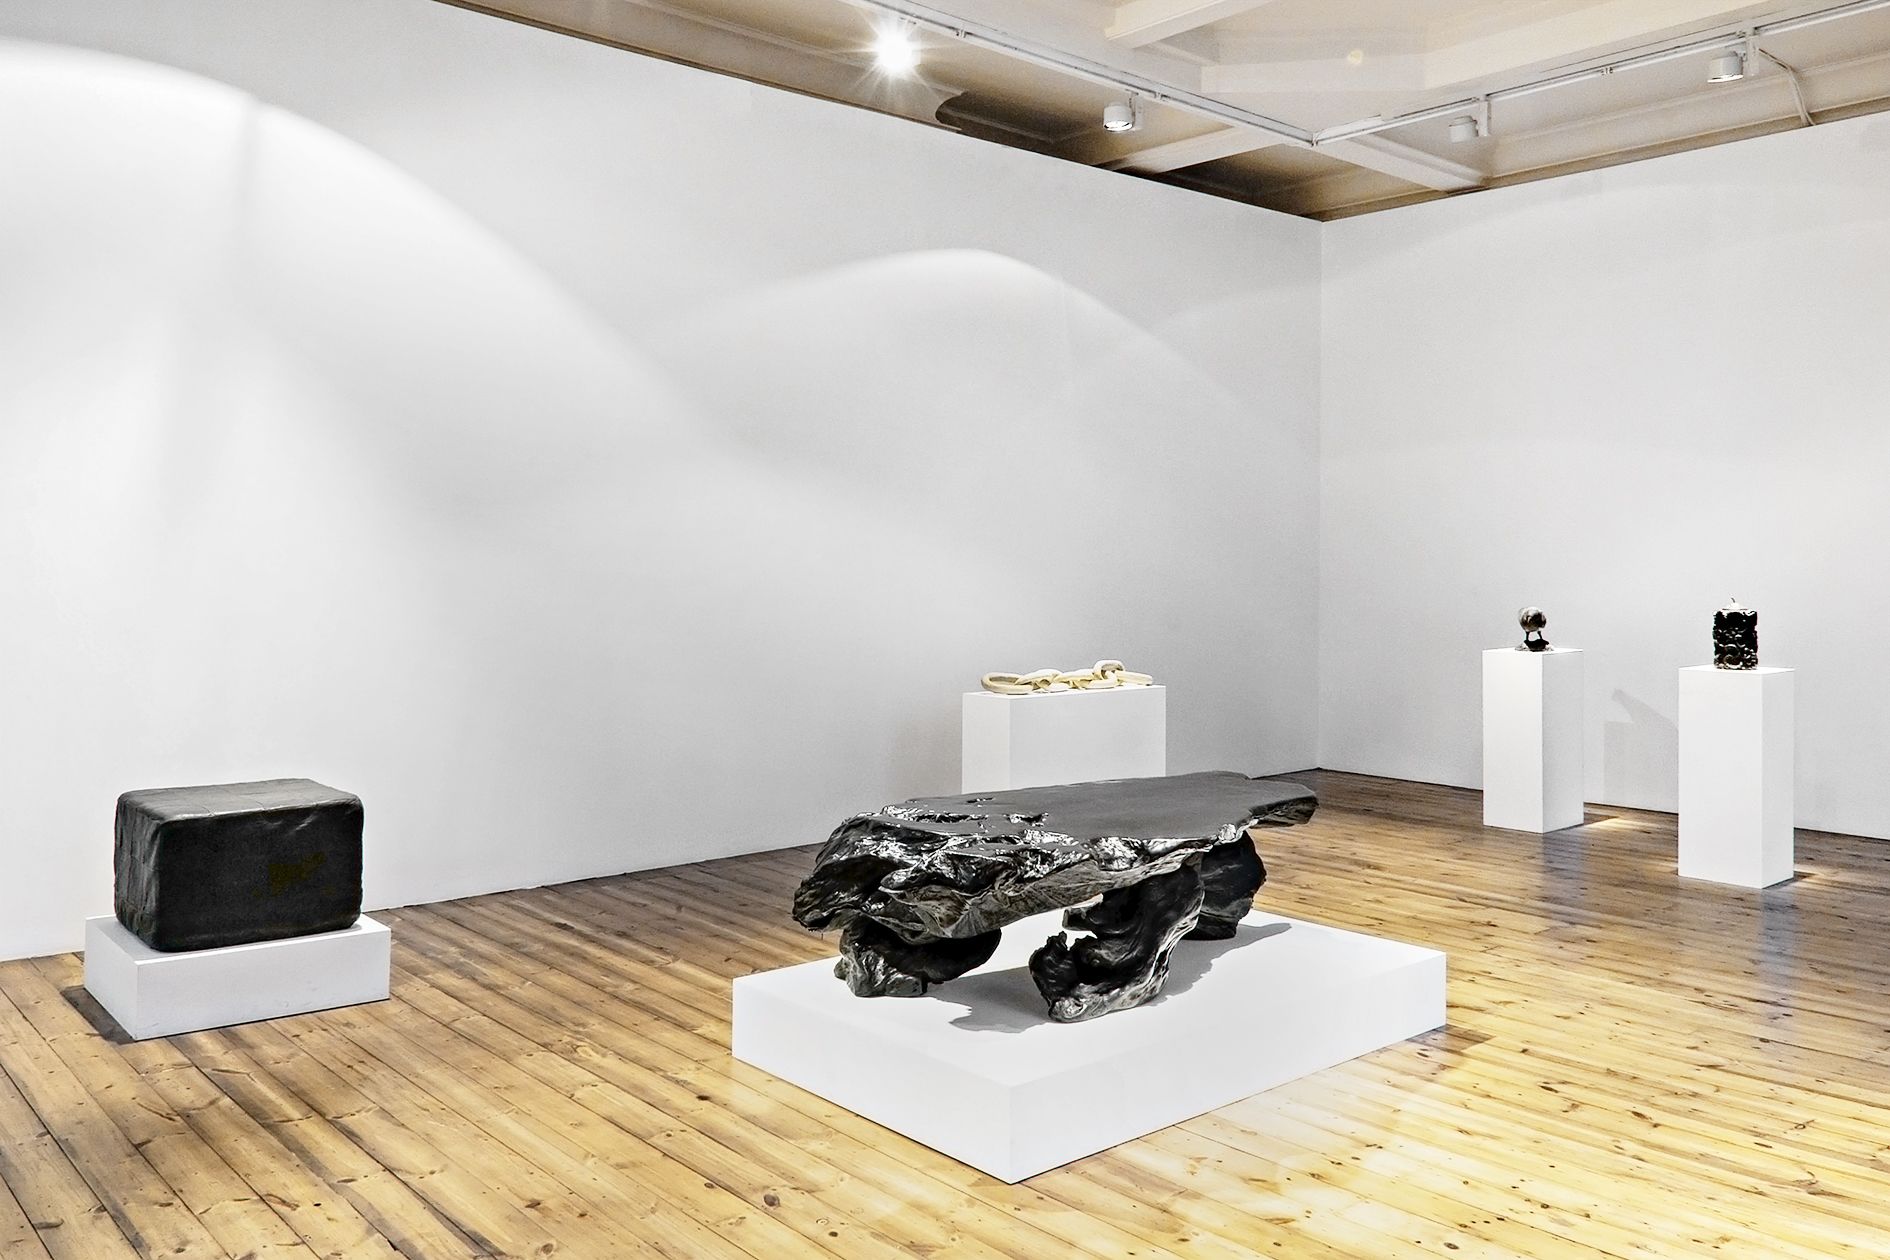 Peter Fischli David Weiss – Objects on pedestals – London